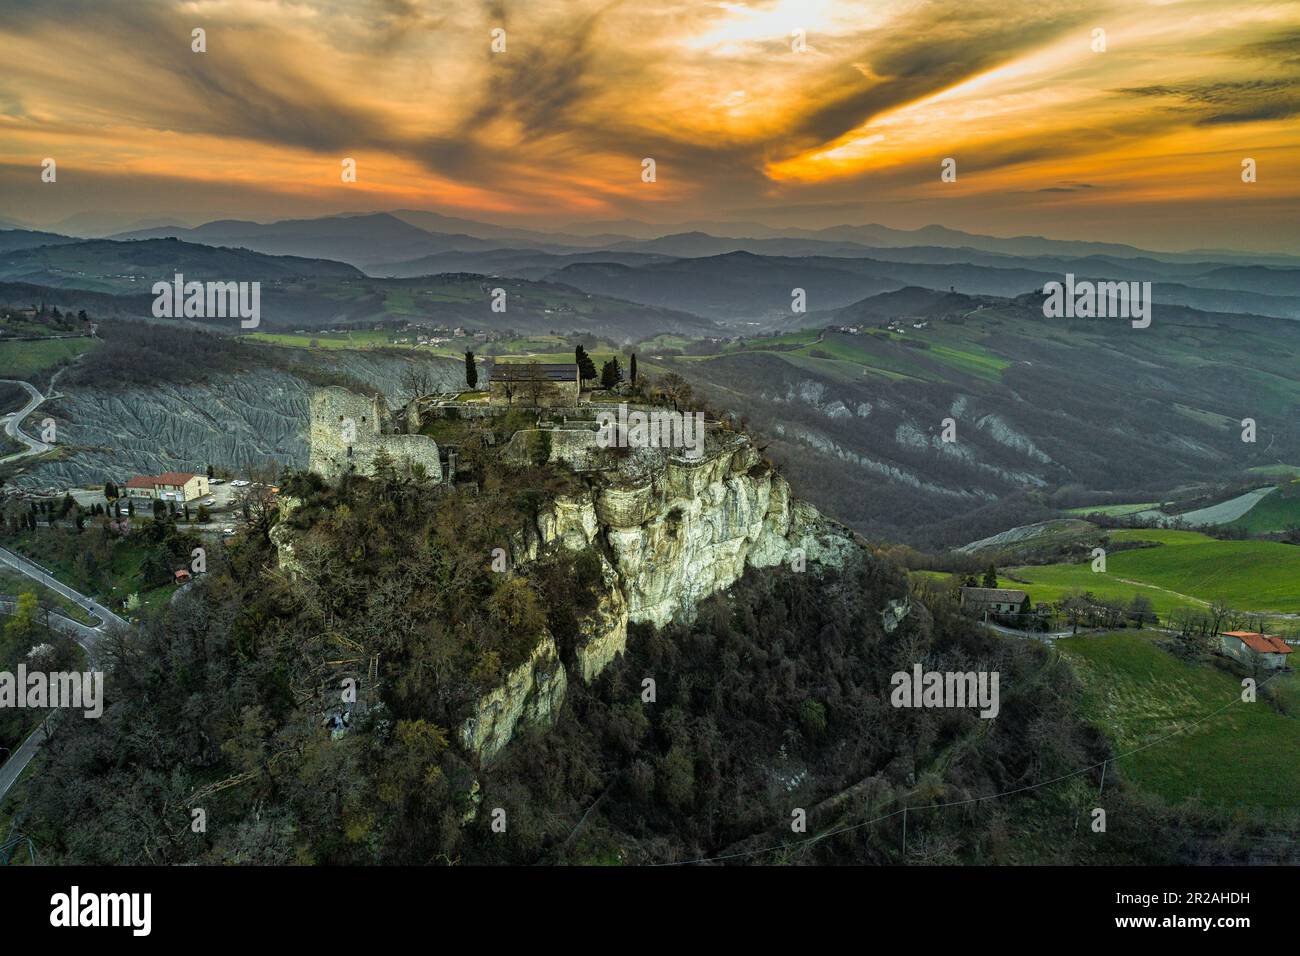 Veduta aerea dei ruderi del castello di Matilde di Canossa con i calanchi e le colline dell'Appennino emiliano sullo sfondo. Emilia Romagna, IT Foto Stock